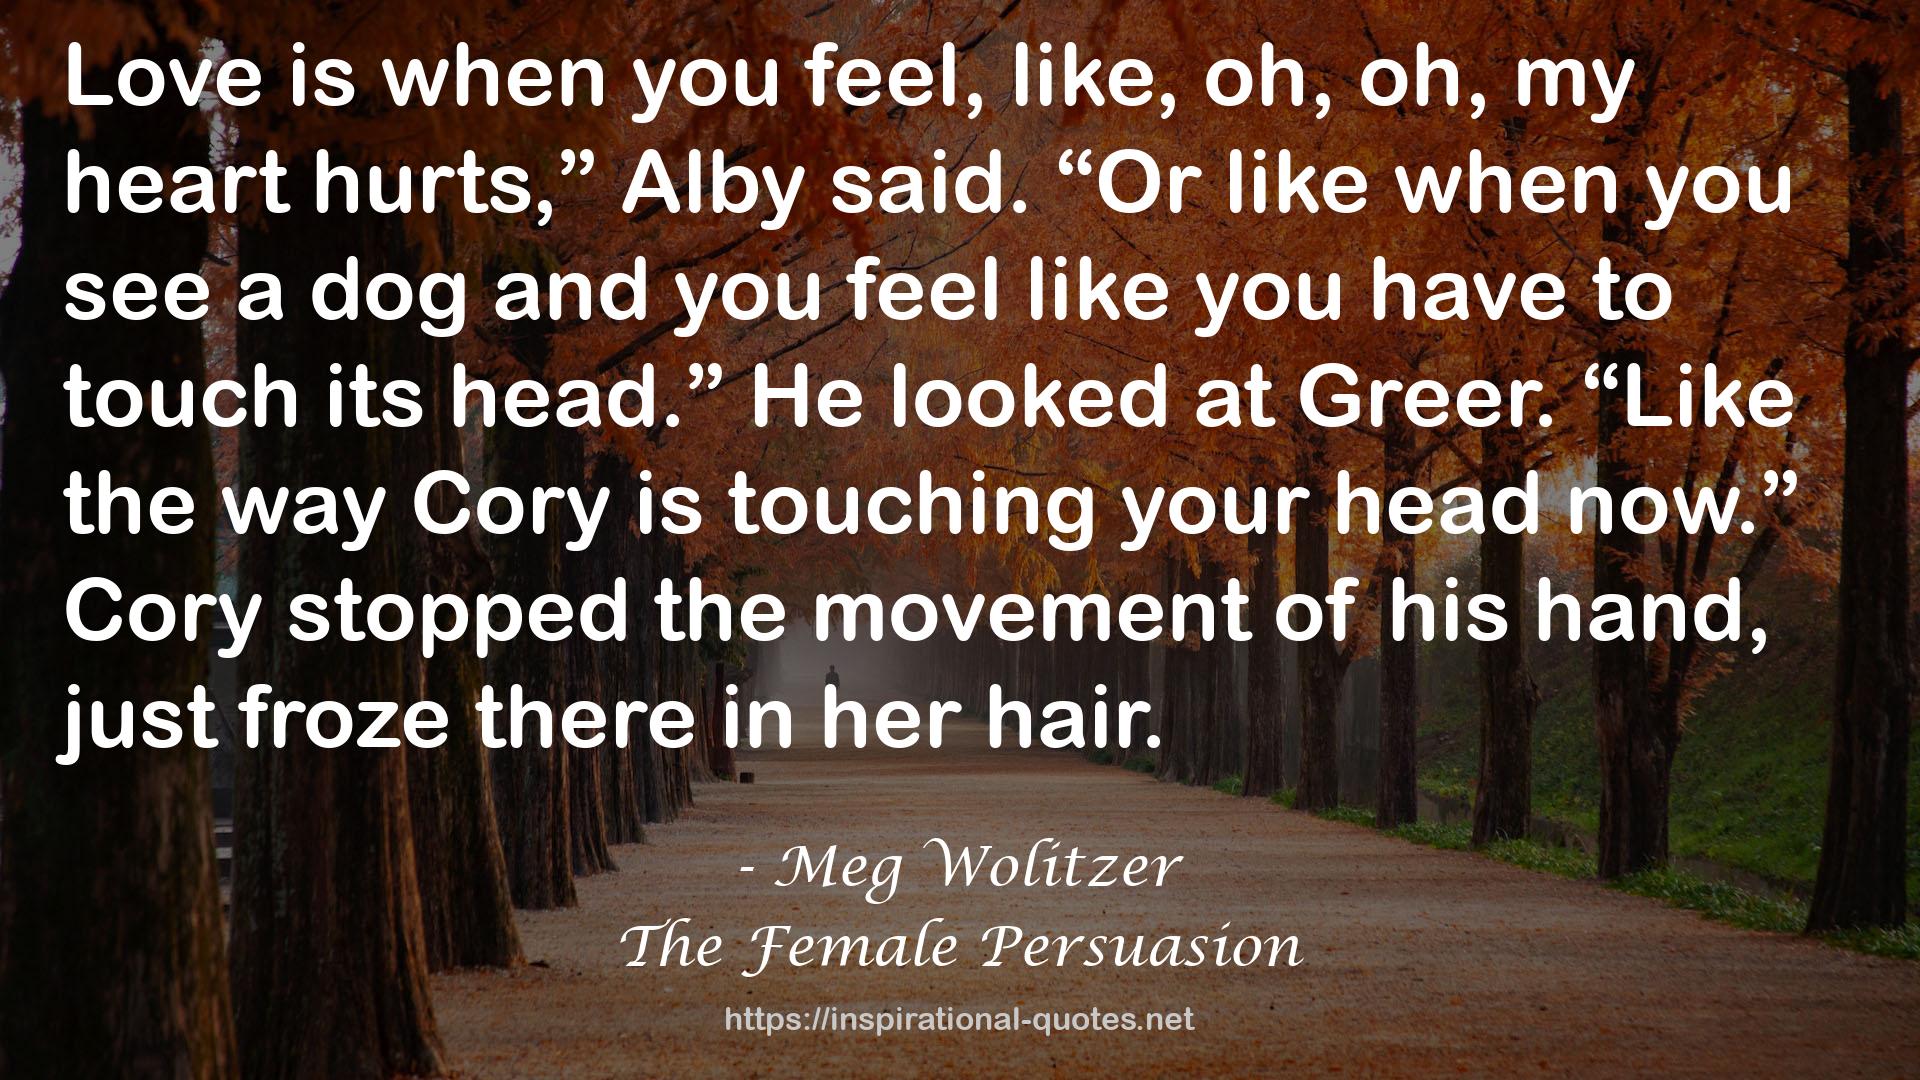 The Female Persuasion QUOTES